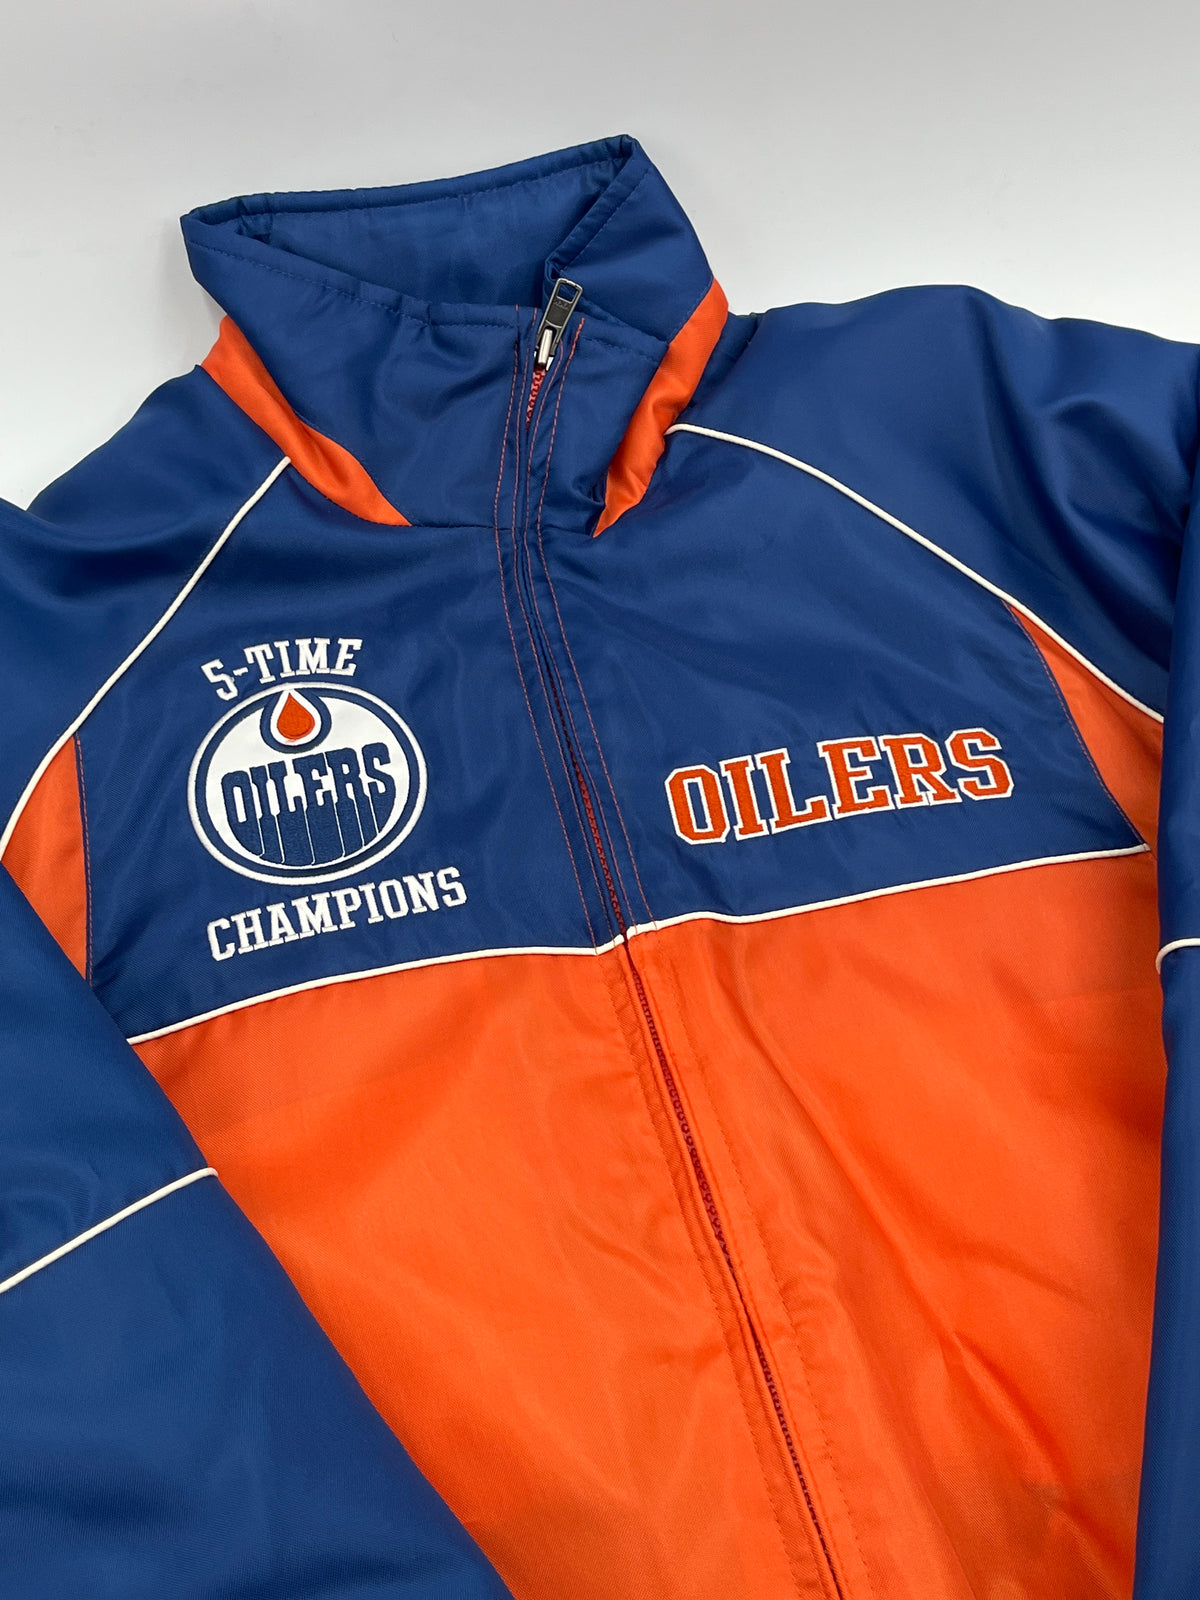 Vintage Edmonton Oilers Jacket